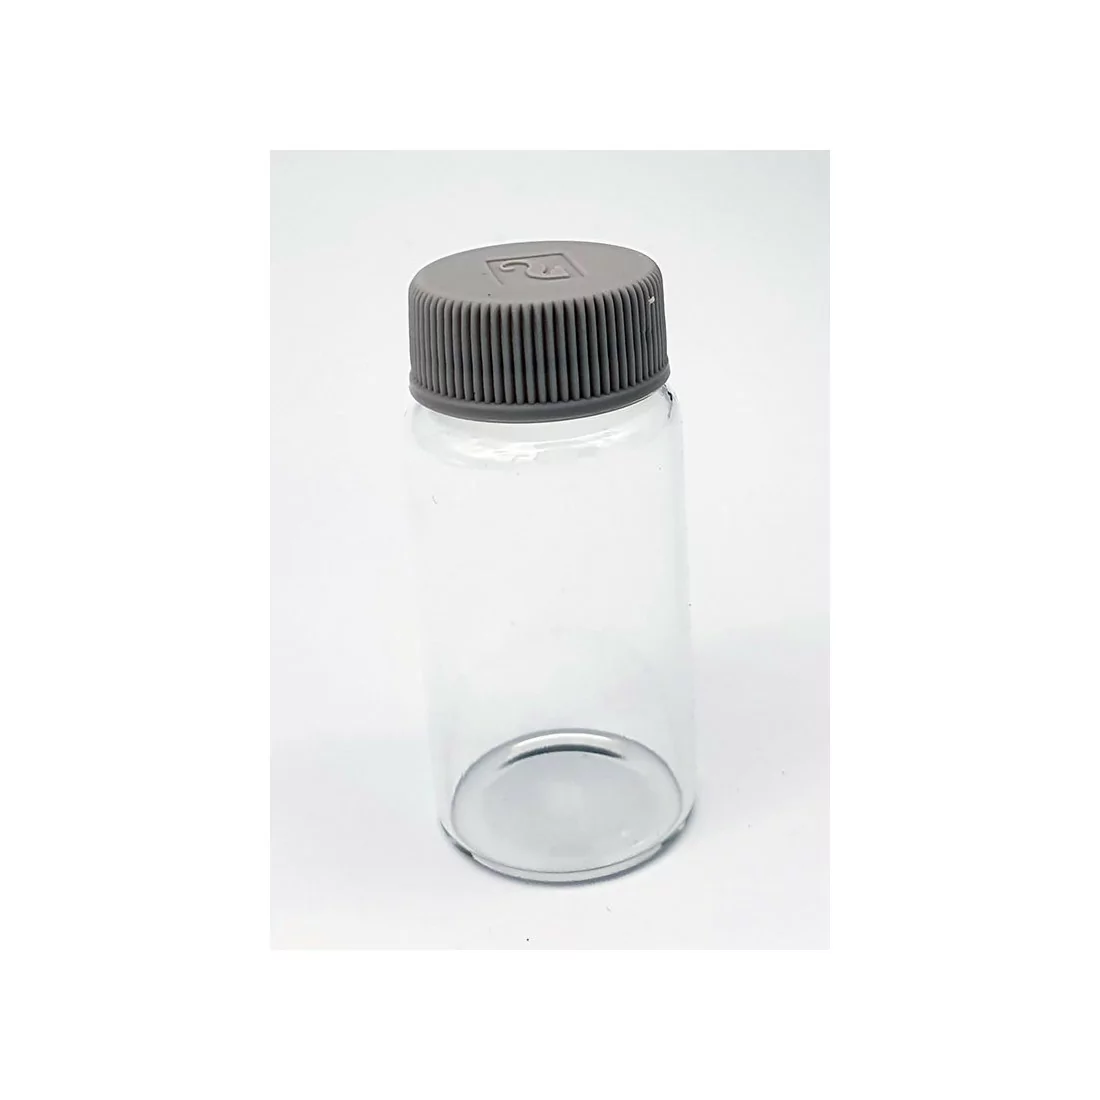 Reactive glass bottle